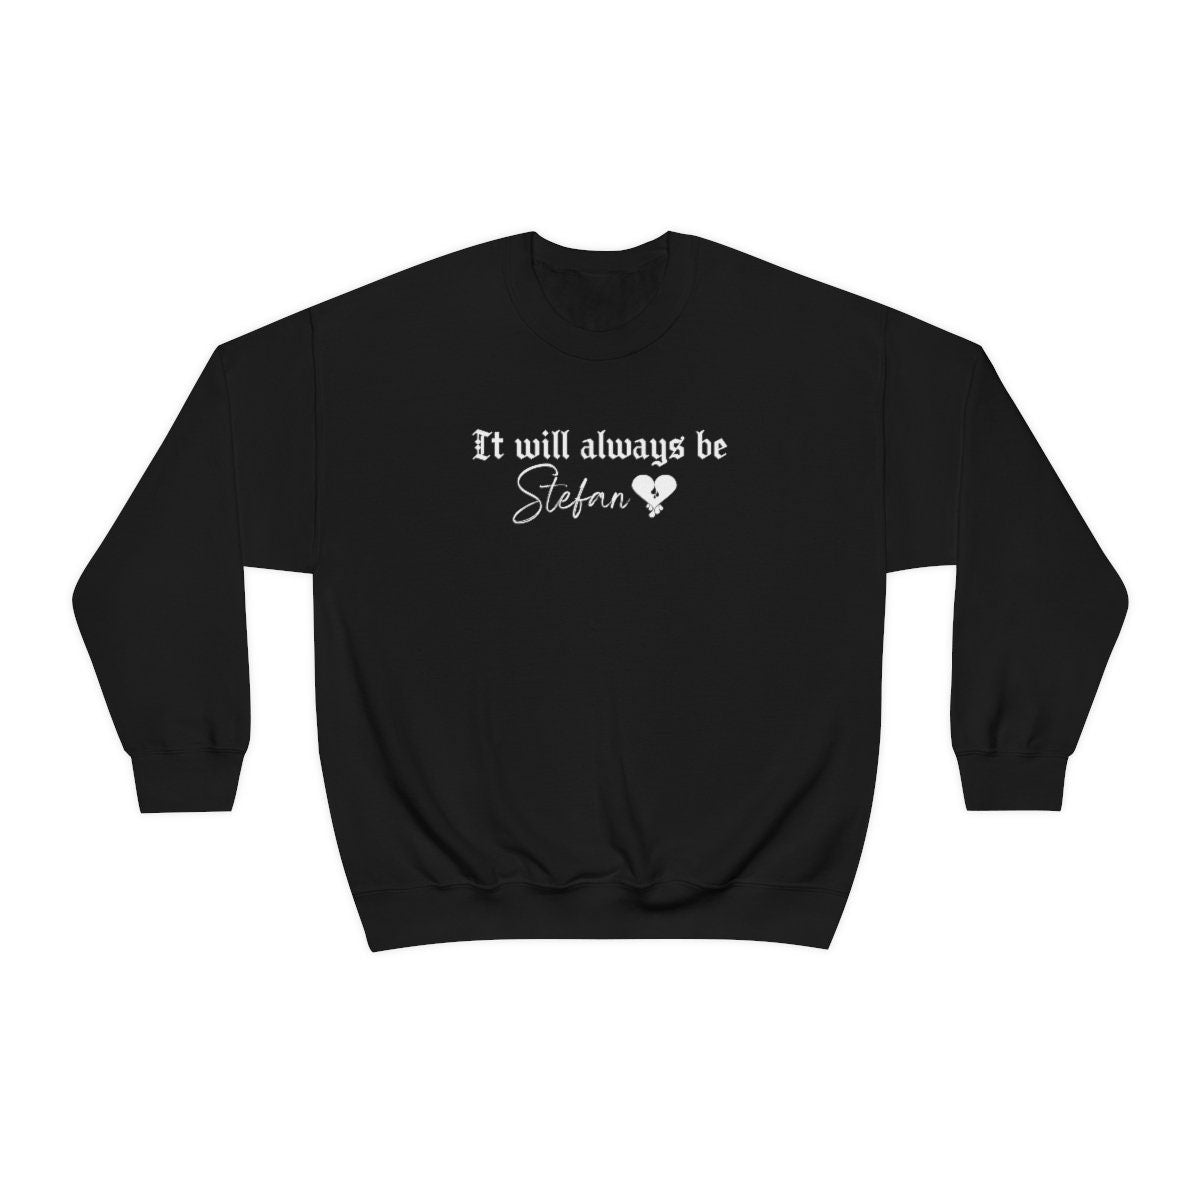 Stefan Salvatore Sweatshirt, TVD Sweatshirt, It will always be Stefan, TVD fan gift, The Vampire Diaries Sweater, Vampire fan gift